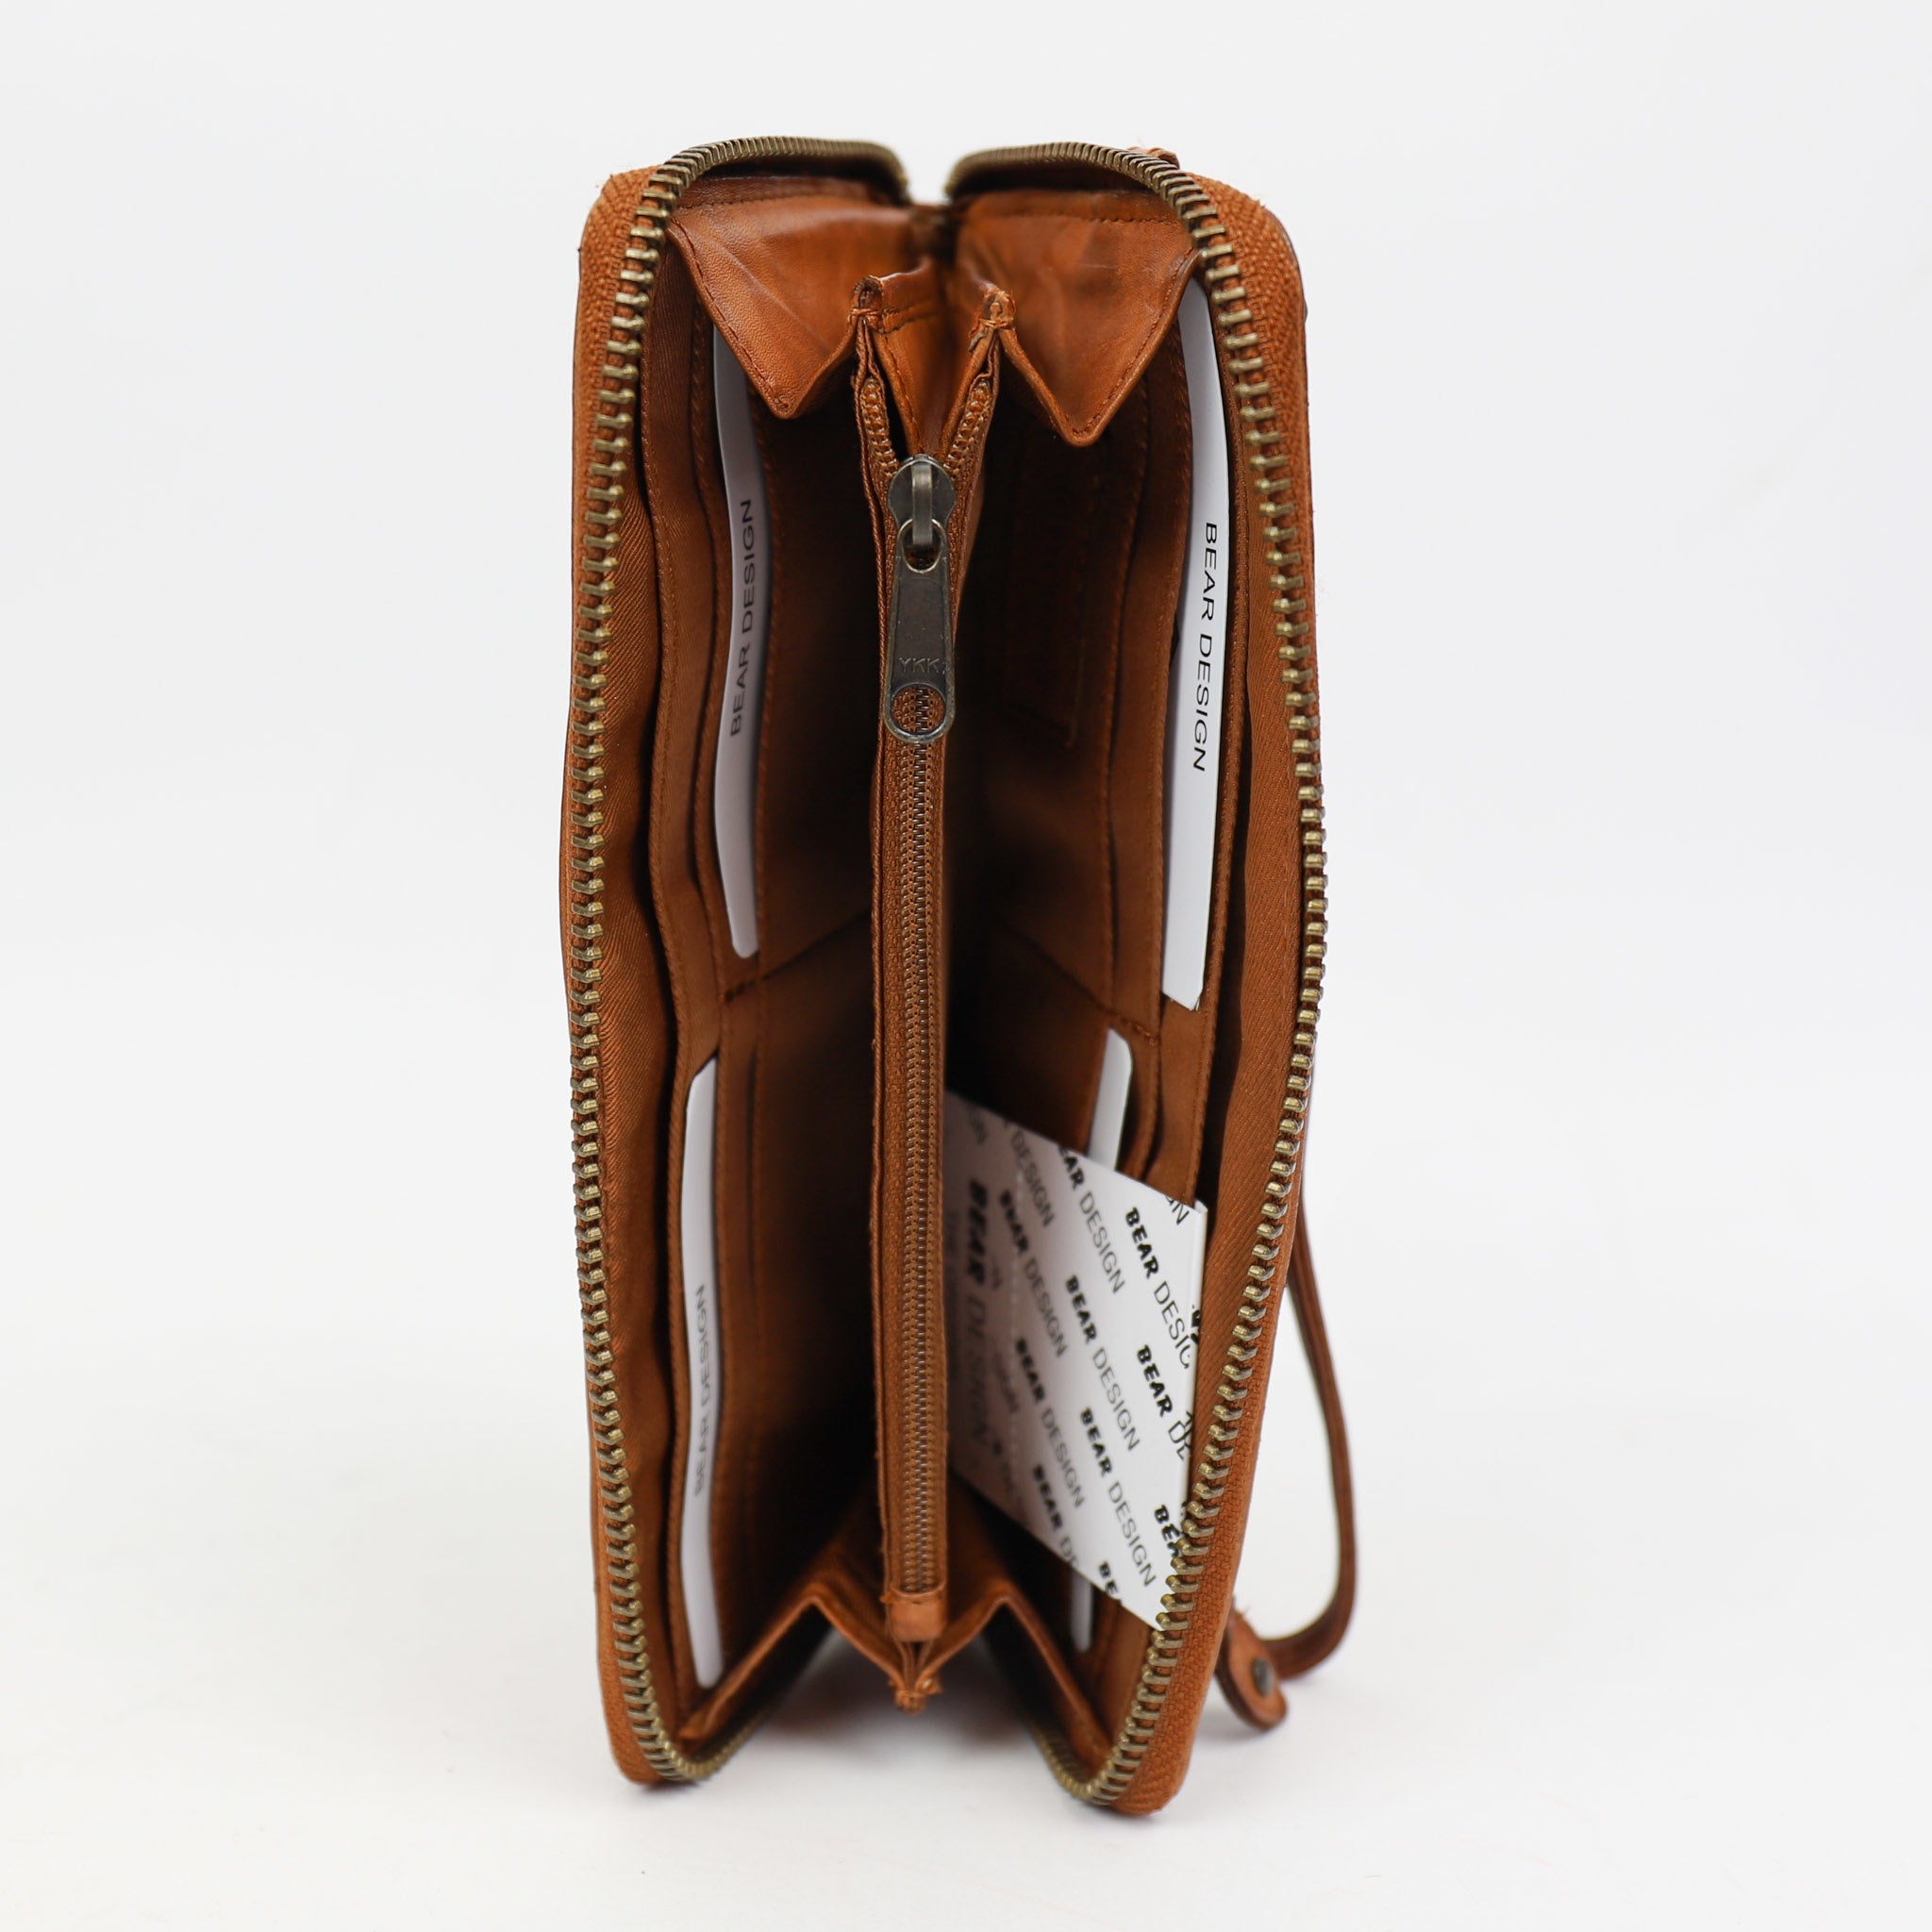 Zipper wallet 'Sofie' cognac - CL 15882